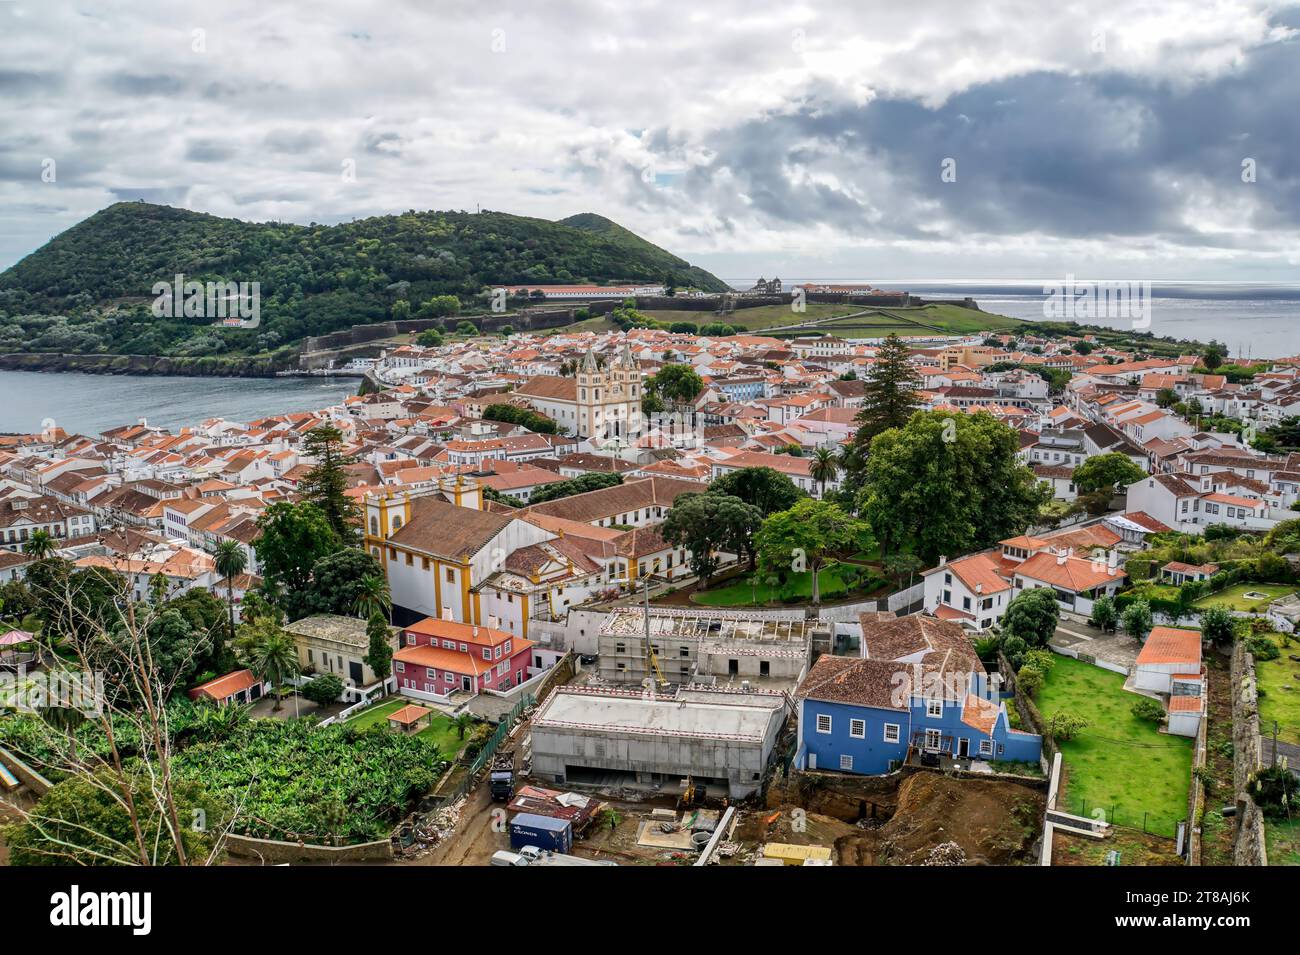 Cidade de Angra do Heroísmo e o Monte Brasil, na Ilha Terceira – Açores – Portugal Stock Photo